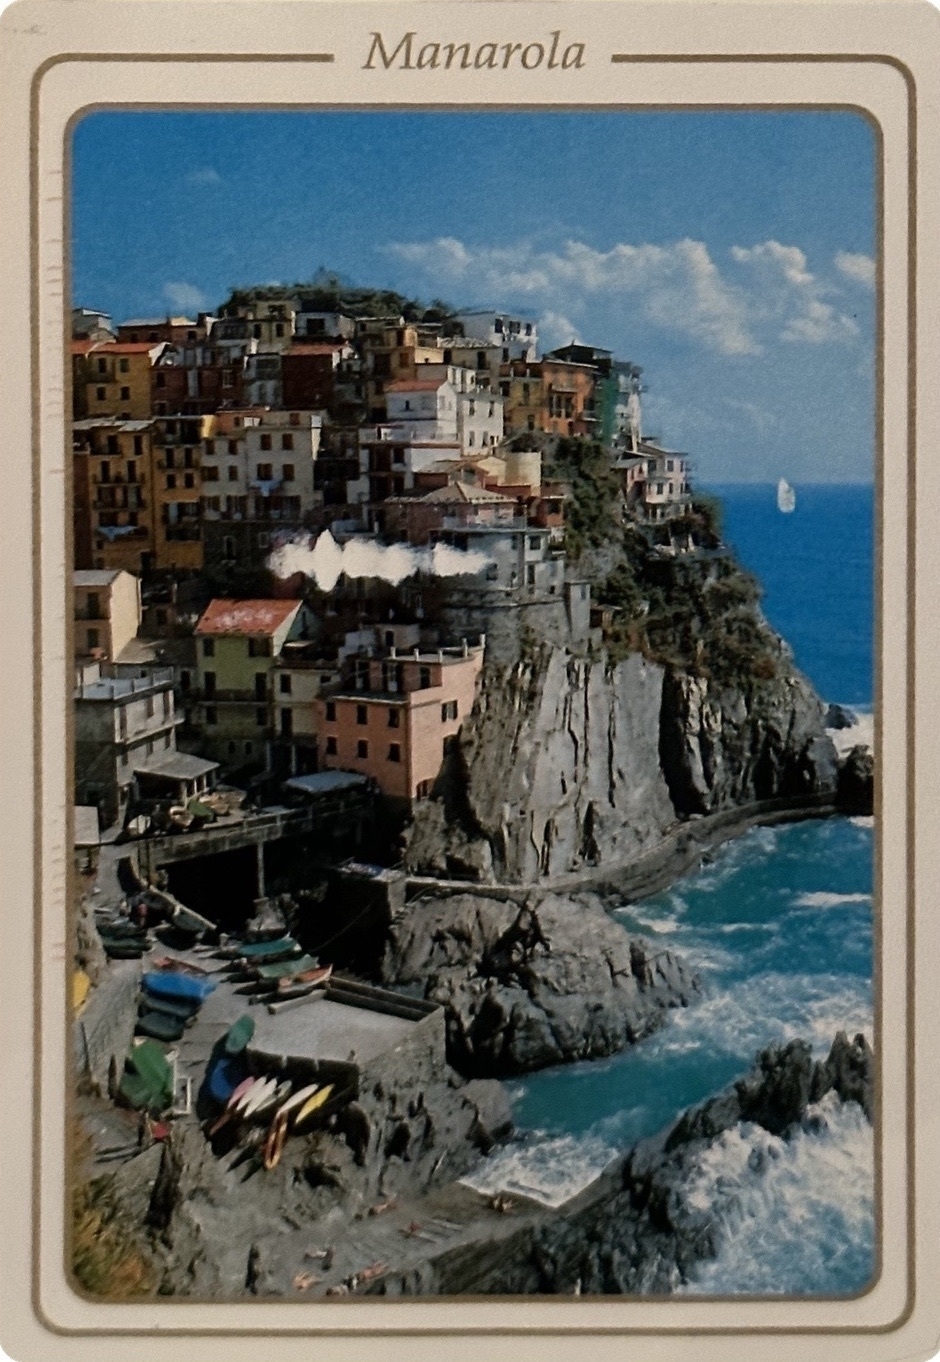 Cinque Terre in Italy.